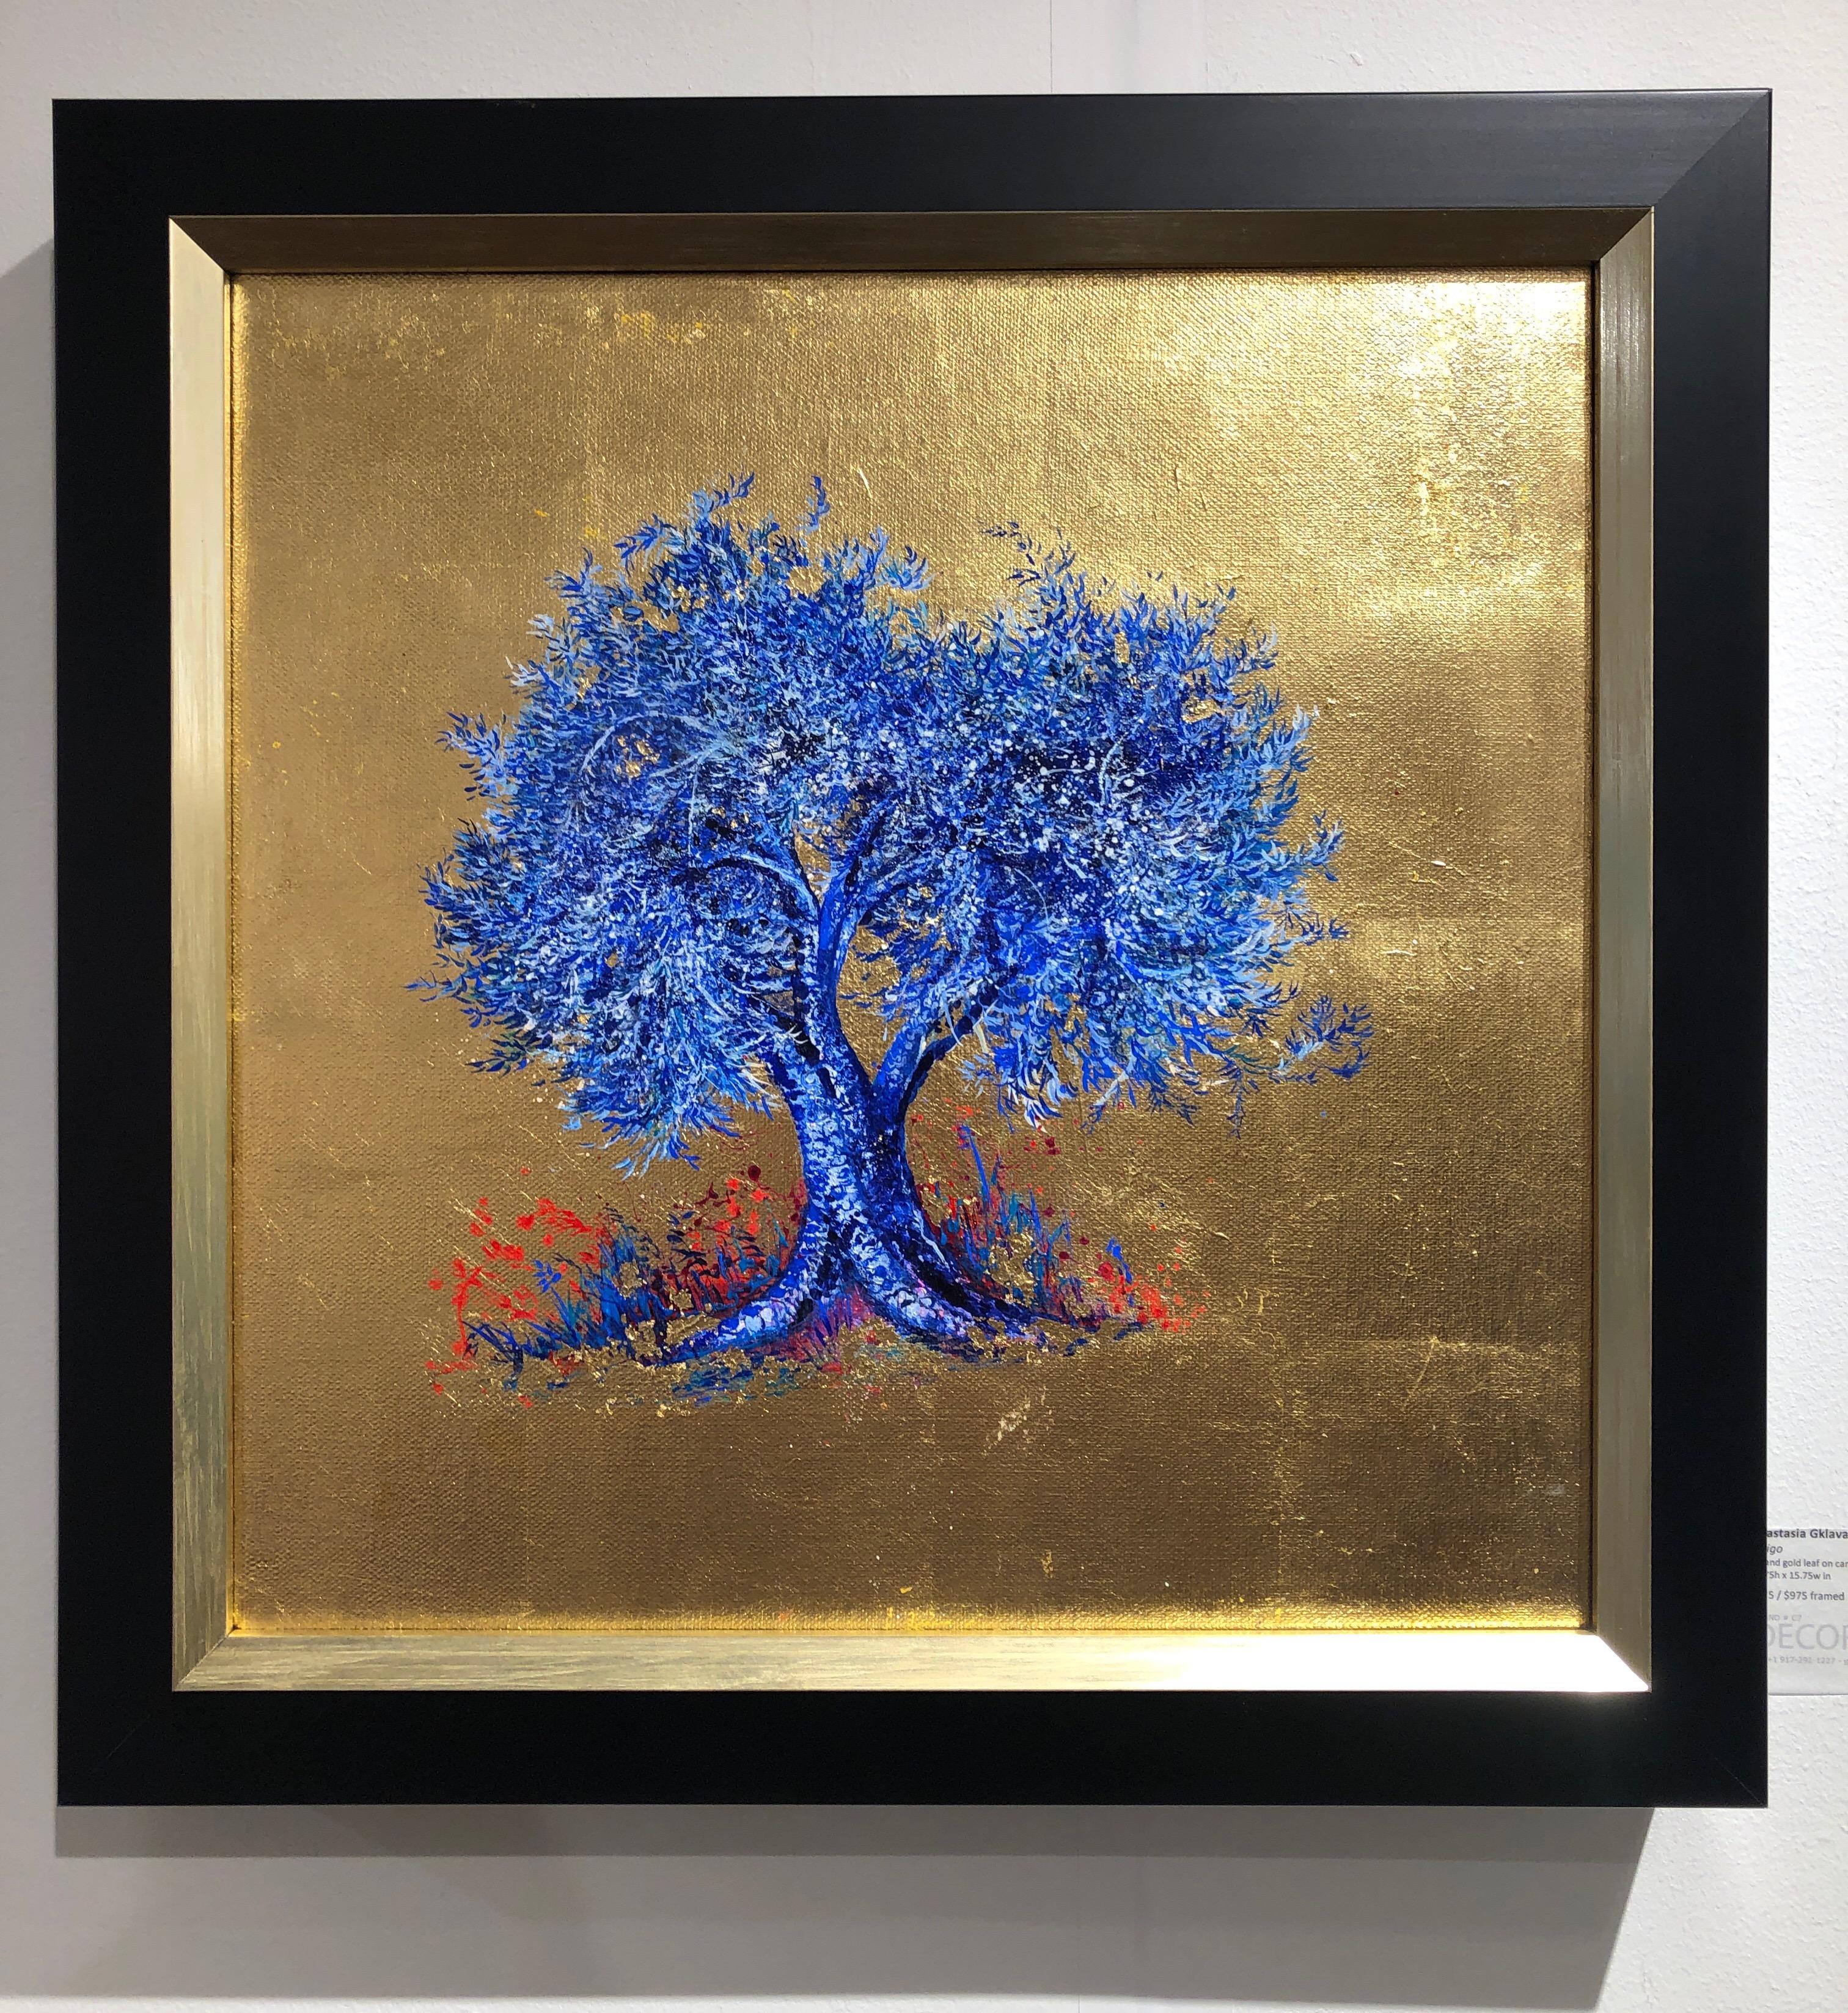 Anastasia Gklava Landscape Painting – Zeitgenössisches Ölgemälde auf Leinwand:: Blattgold:: Indigo:: blühender blauer Baum